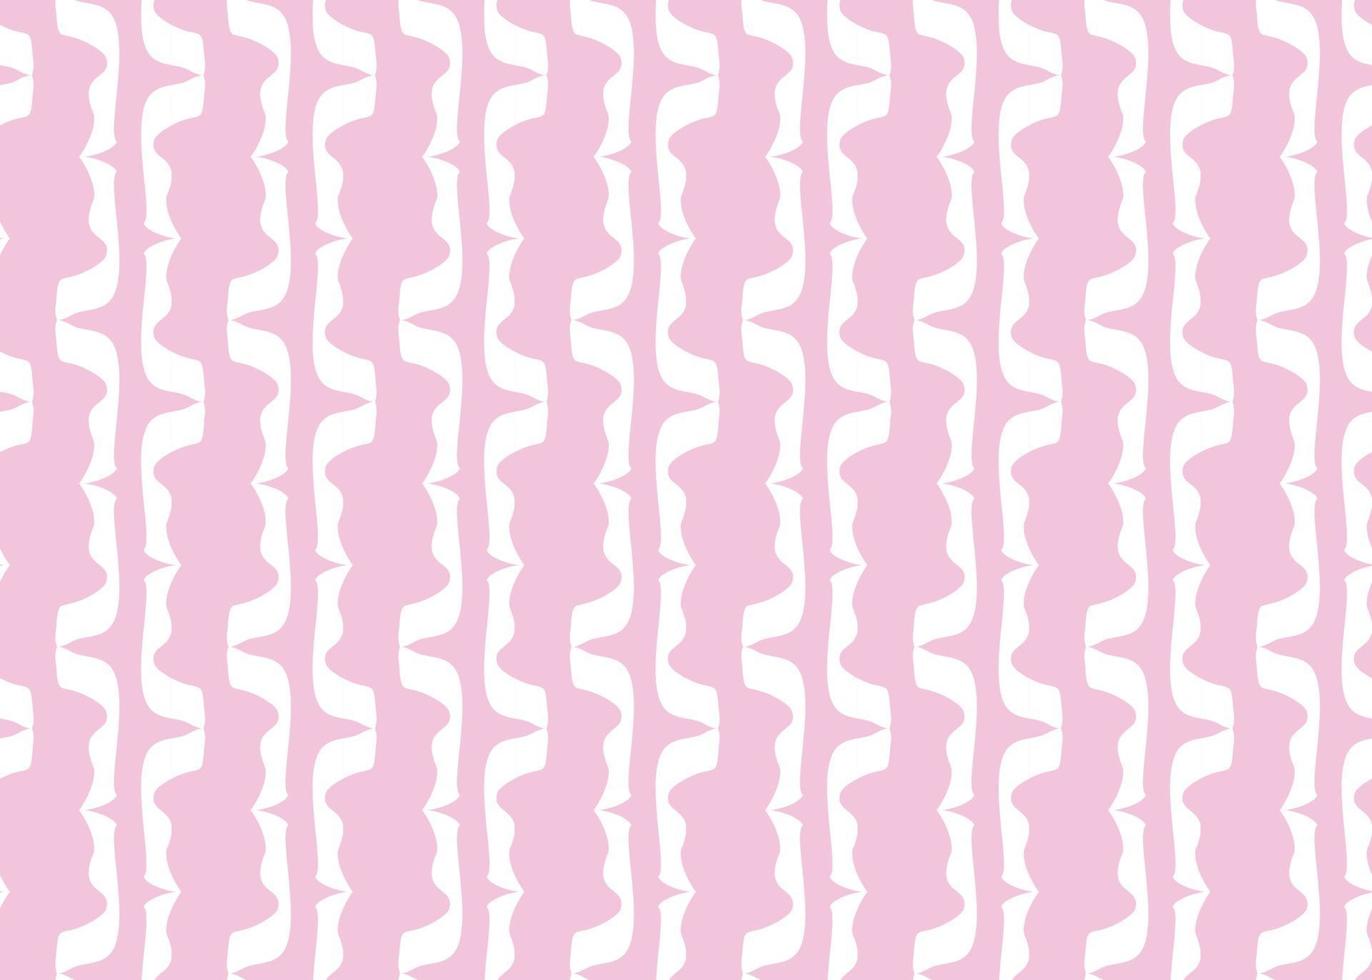 Vektor Textur Hintergrund, nahtloses Muster. handgezeichnete, rosa, weiße Farben.